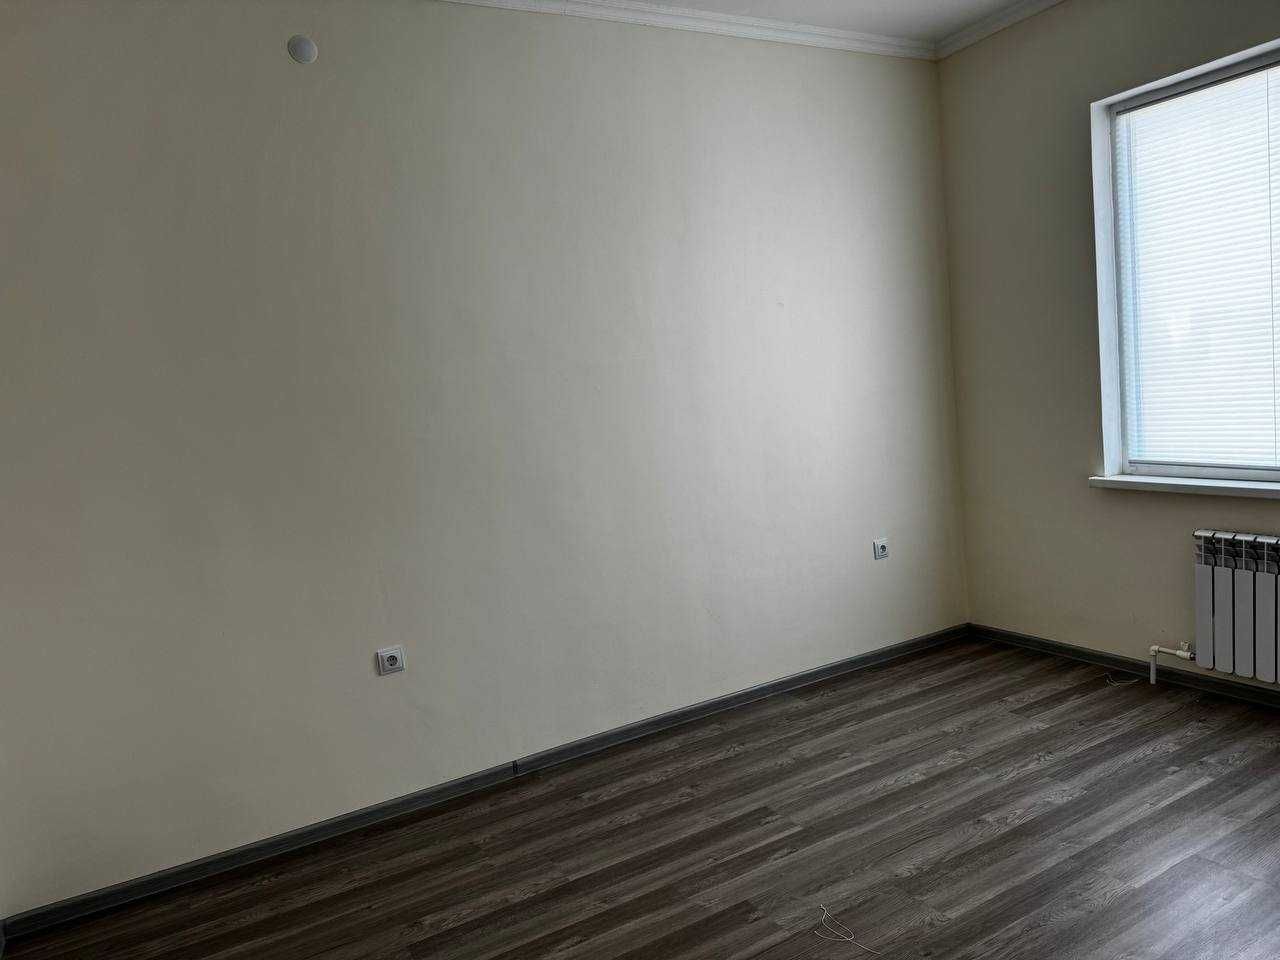 Продается 3-х комнатная квартира (новостройка) Алмалык. Нижняя Терраса